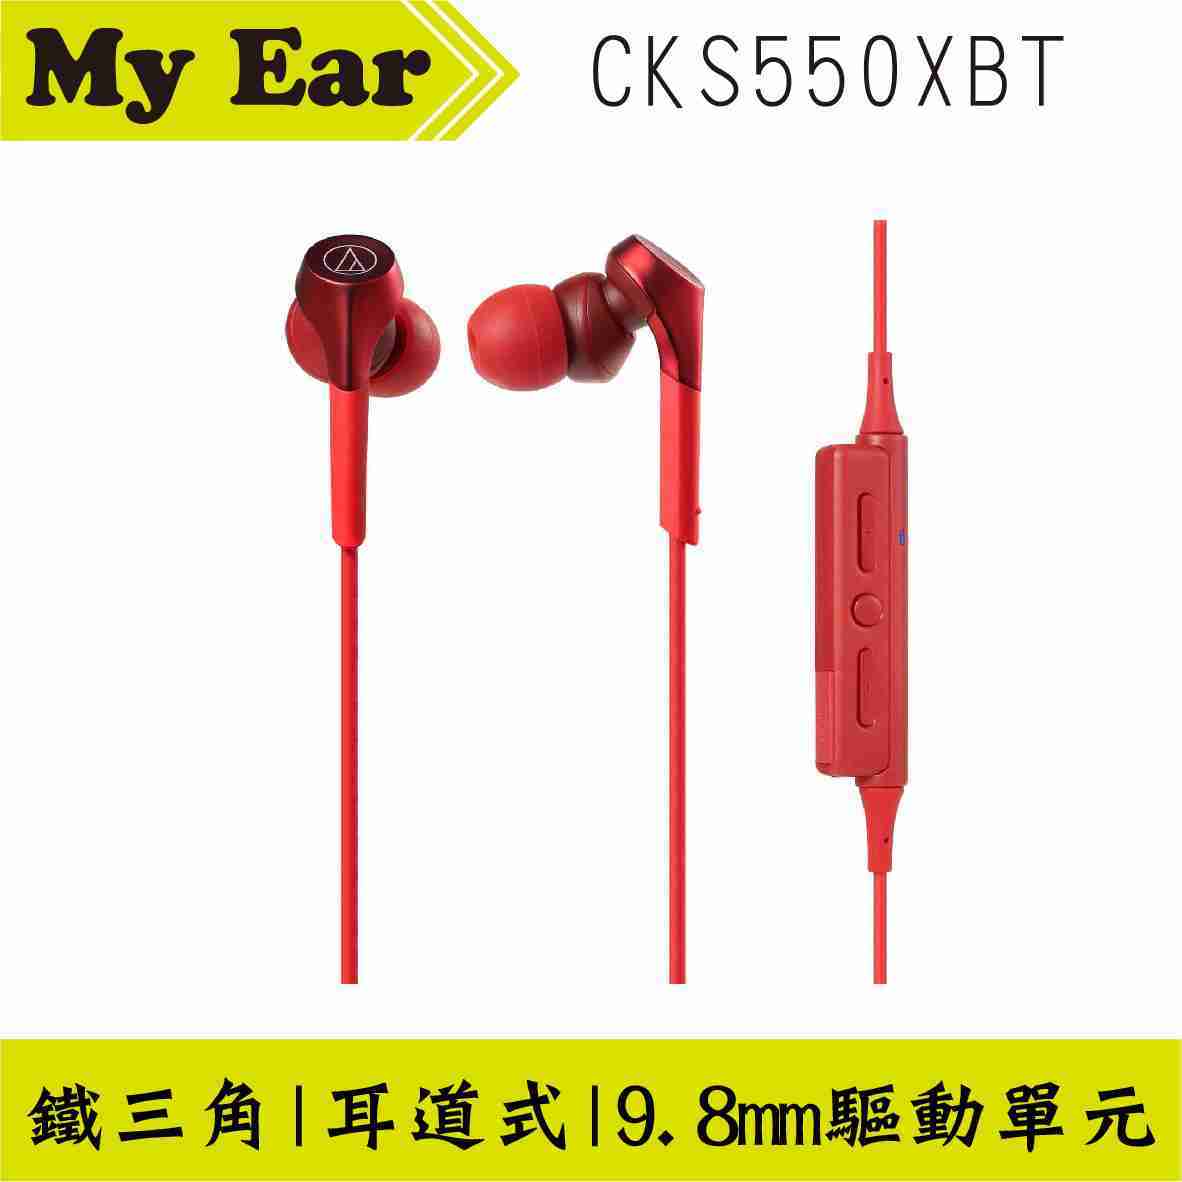 鐵三角 ATH-CKS550XBT 紅色 APTX 無線藍芽 繞頸式 耳道式耳機｜My Ear 耳機專門店